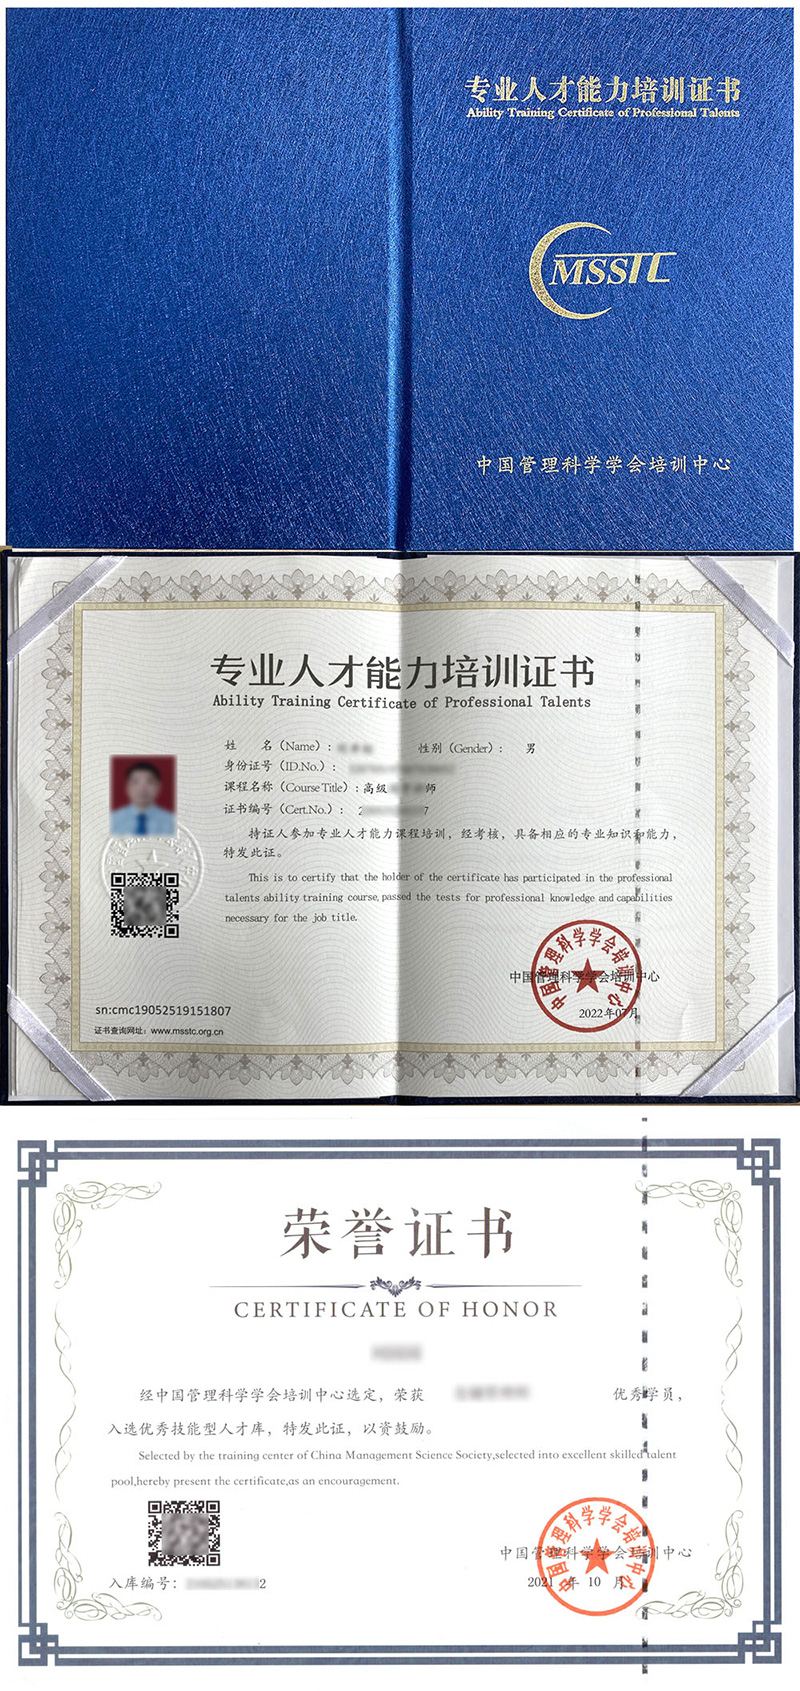 中国管理科学学会培训中心 专业人才能力培训证书 全脑潜能开发师证证书样本